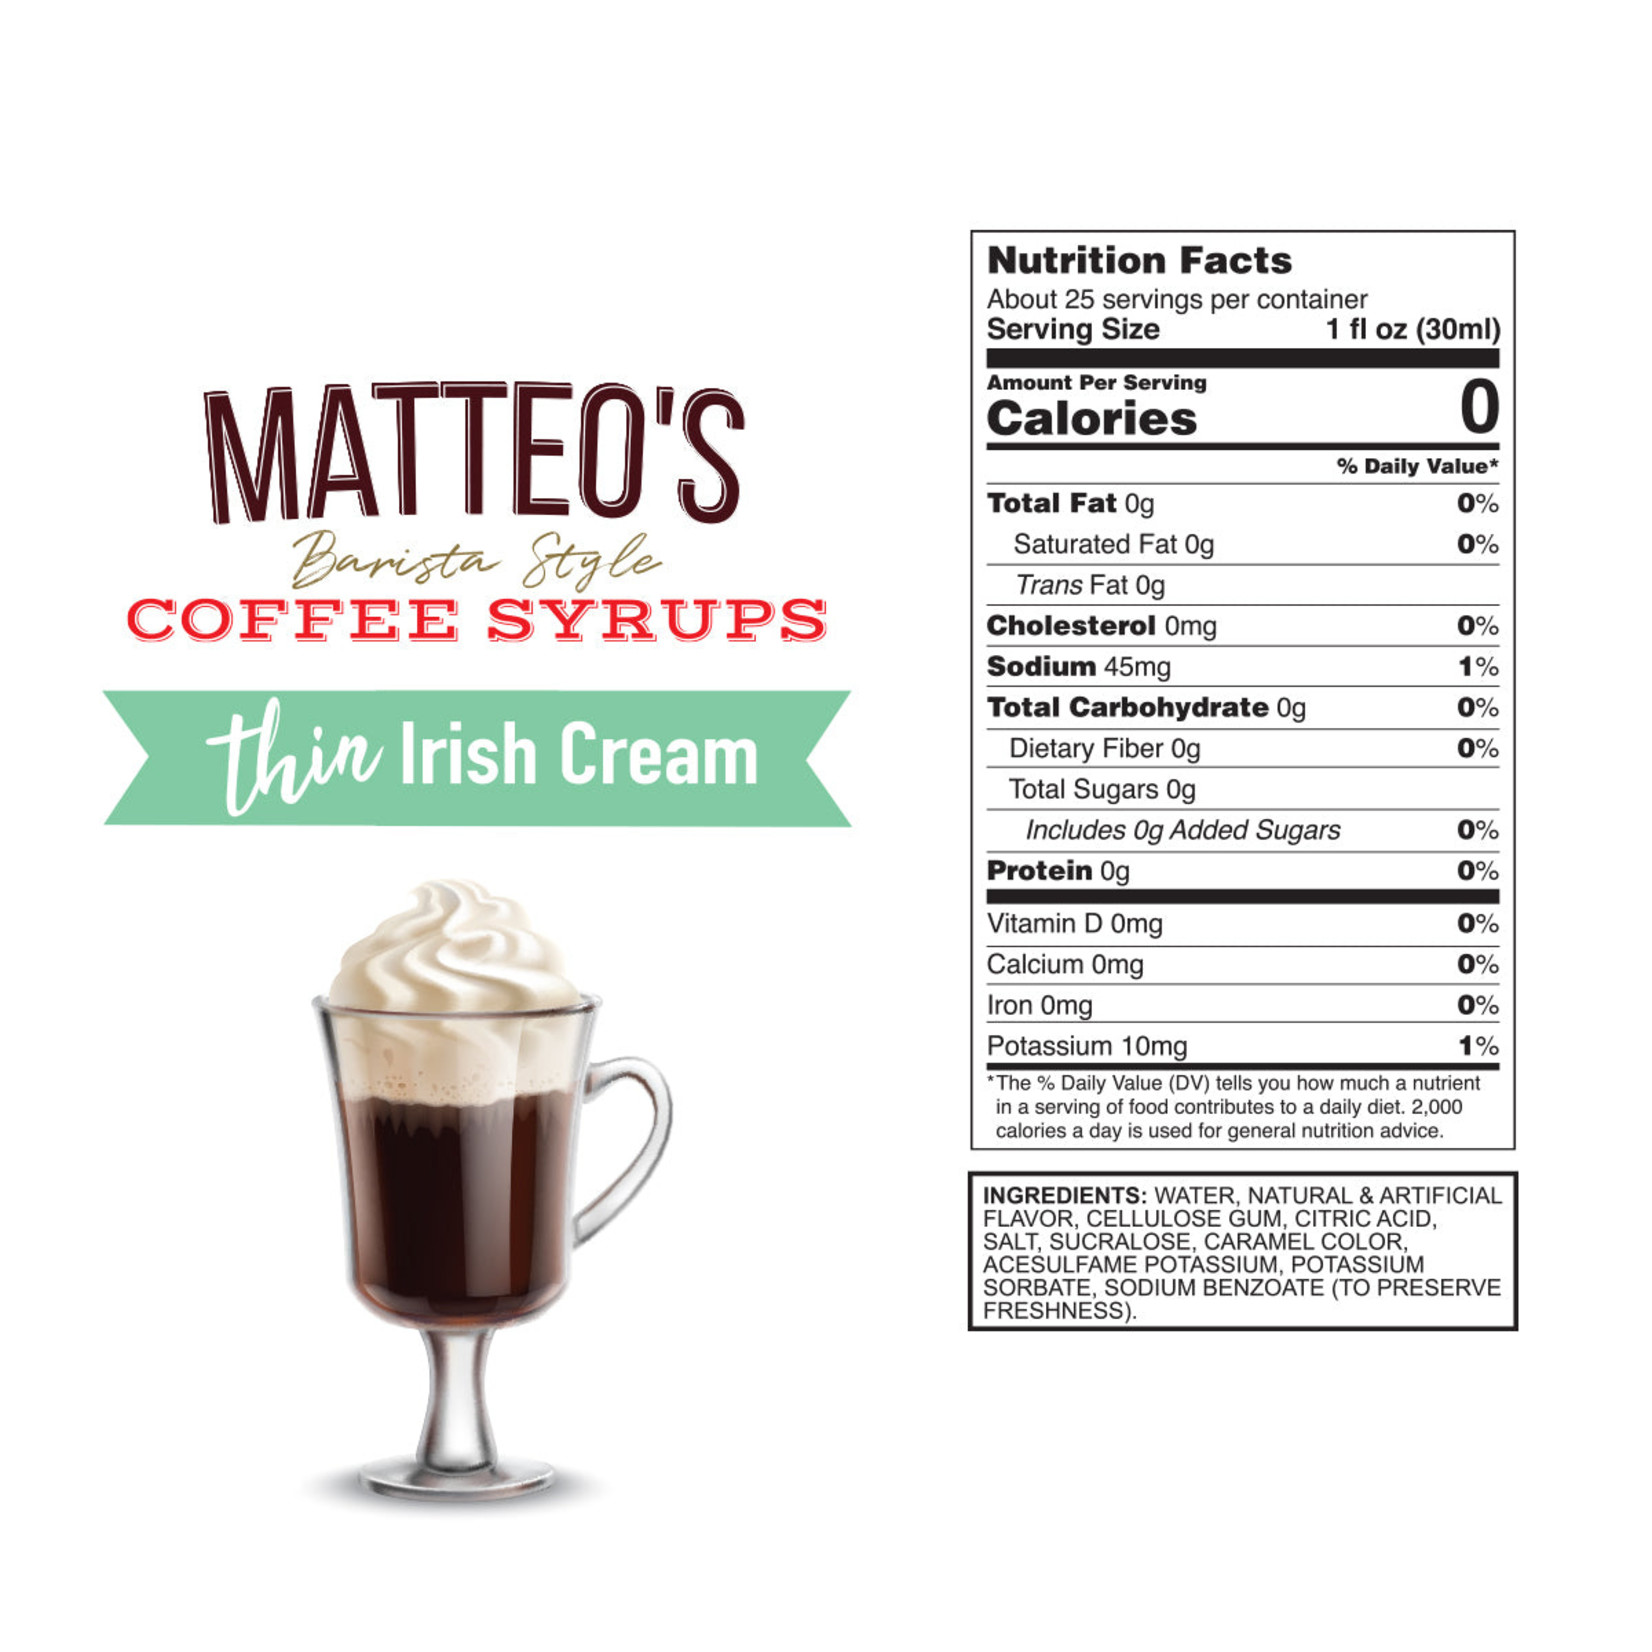 MATTEO'S Sirop à café Crème Caramel 750ml - Atelier Kaféin